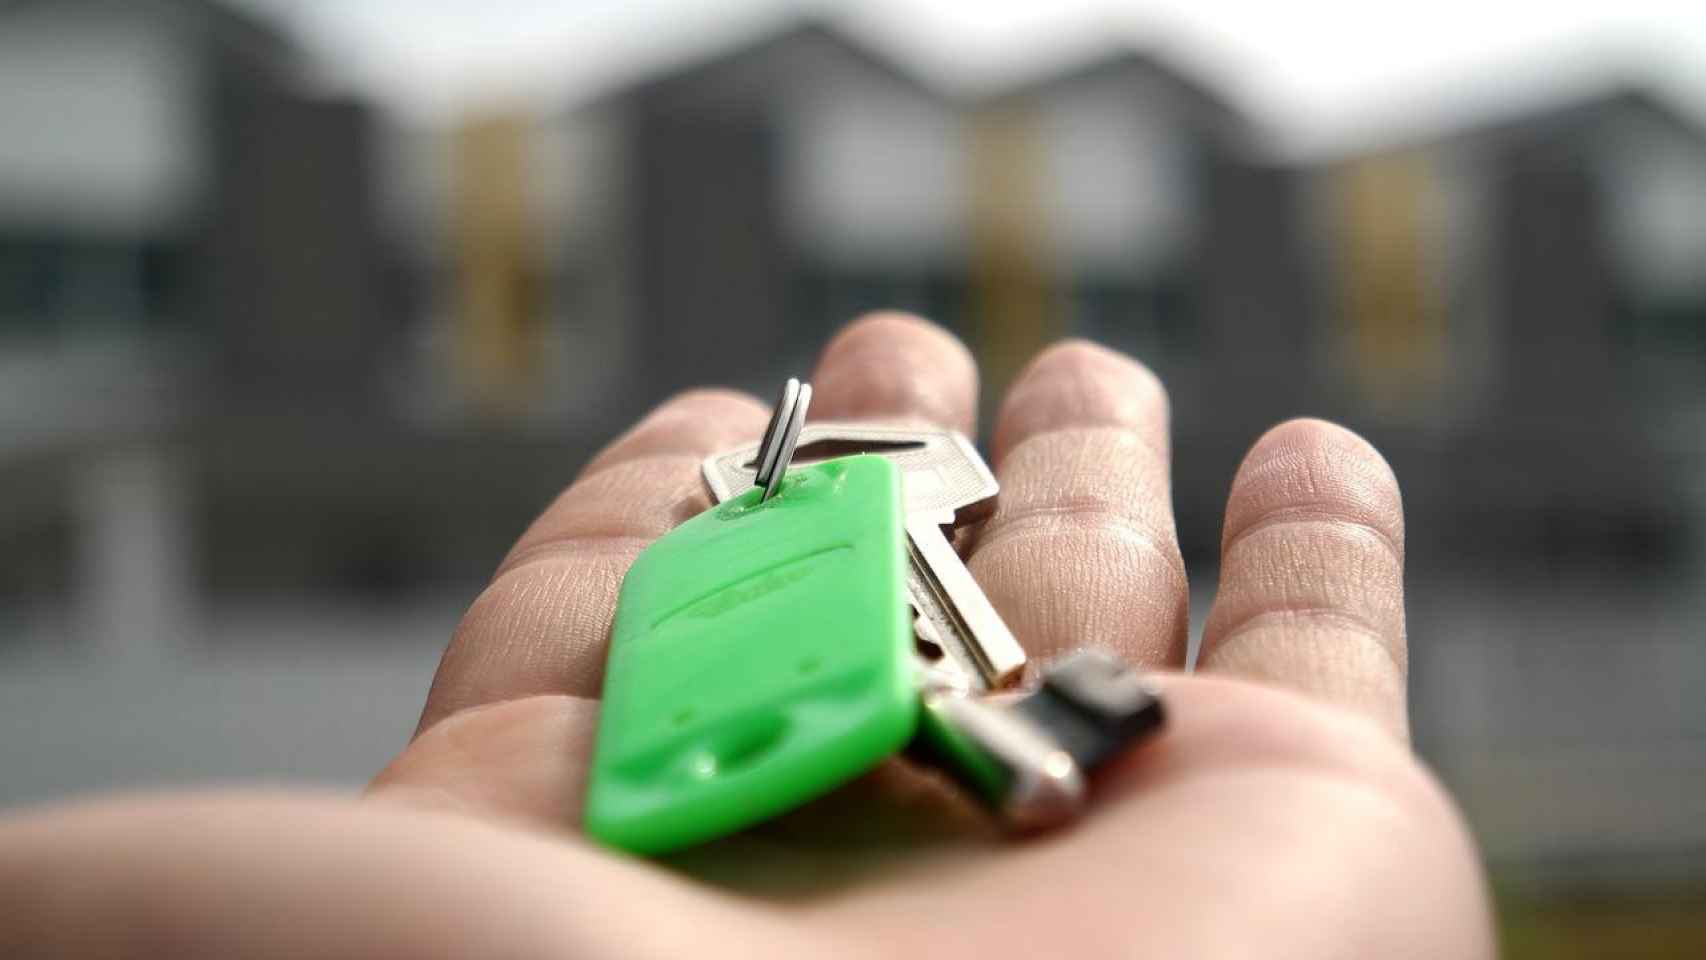 Una llave en manos del dueño de una vivienda, como los que tienen inquilinos convertidos en okupas